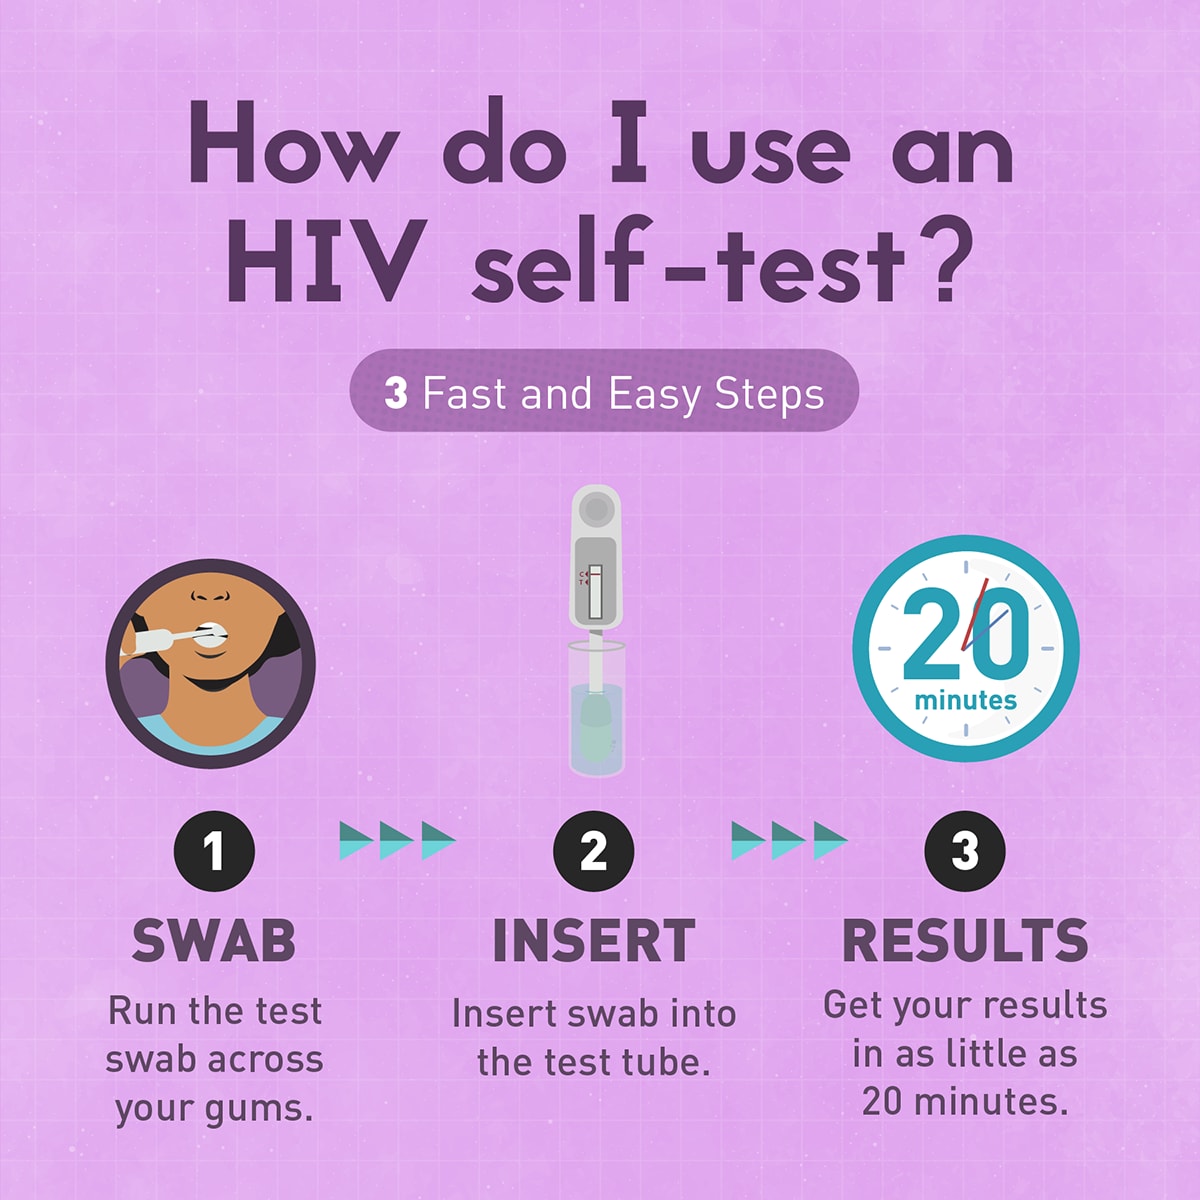 How do I use an HIV self-test?